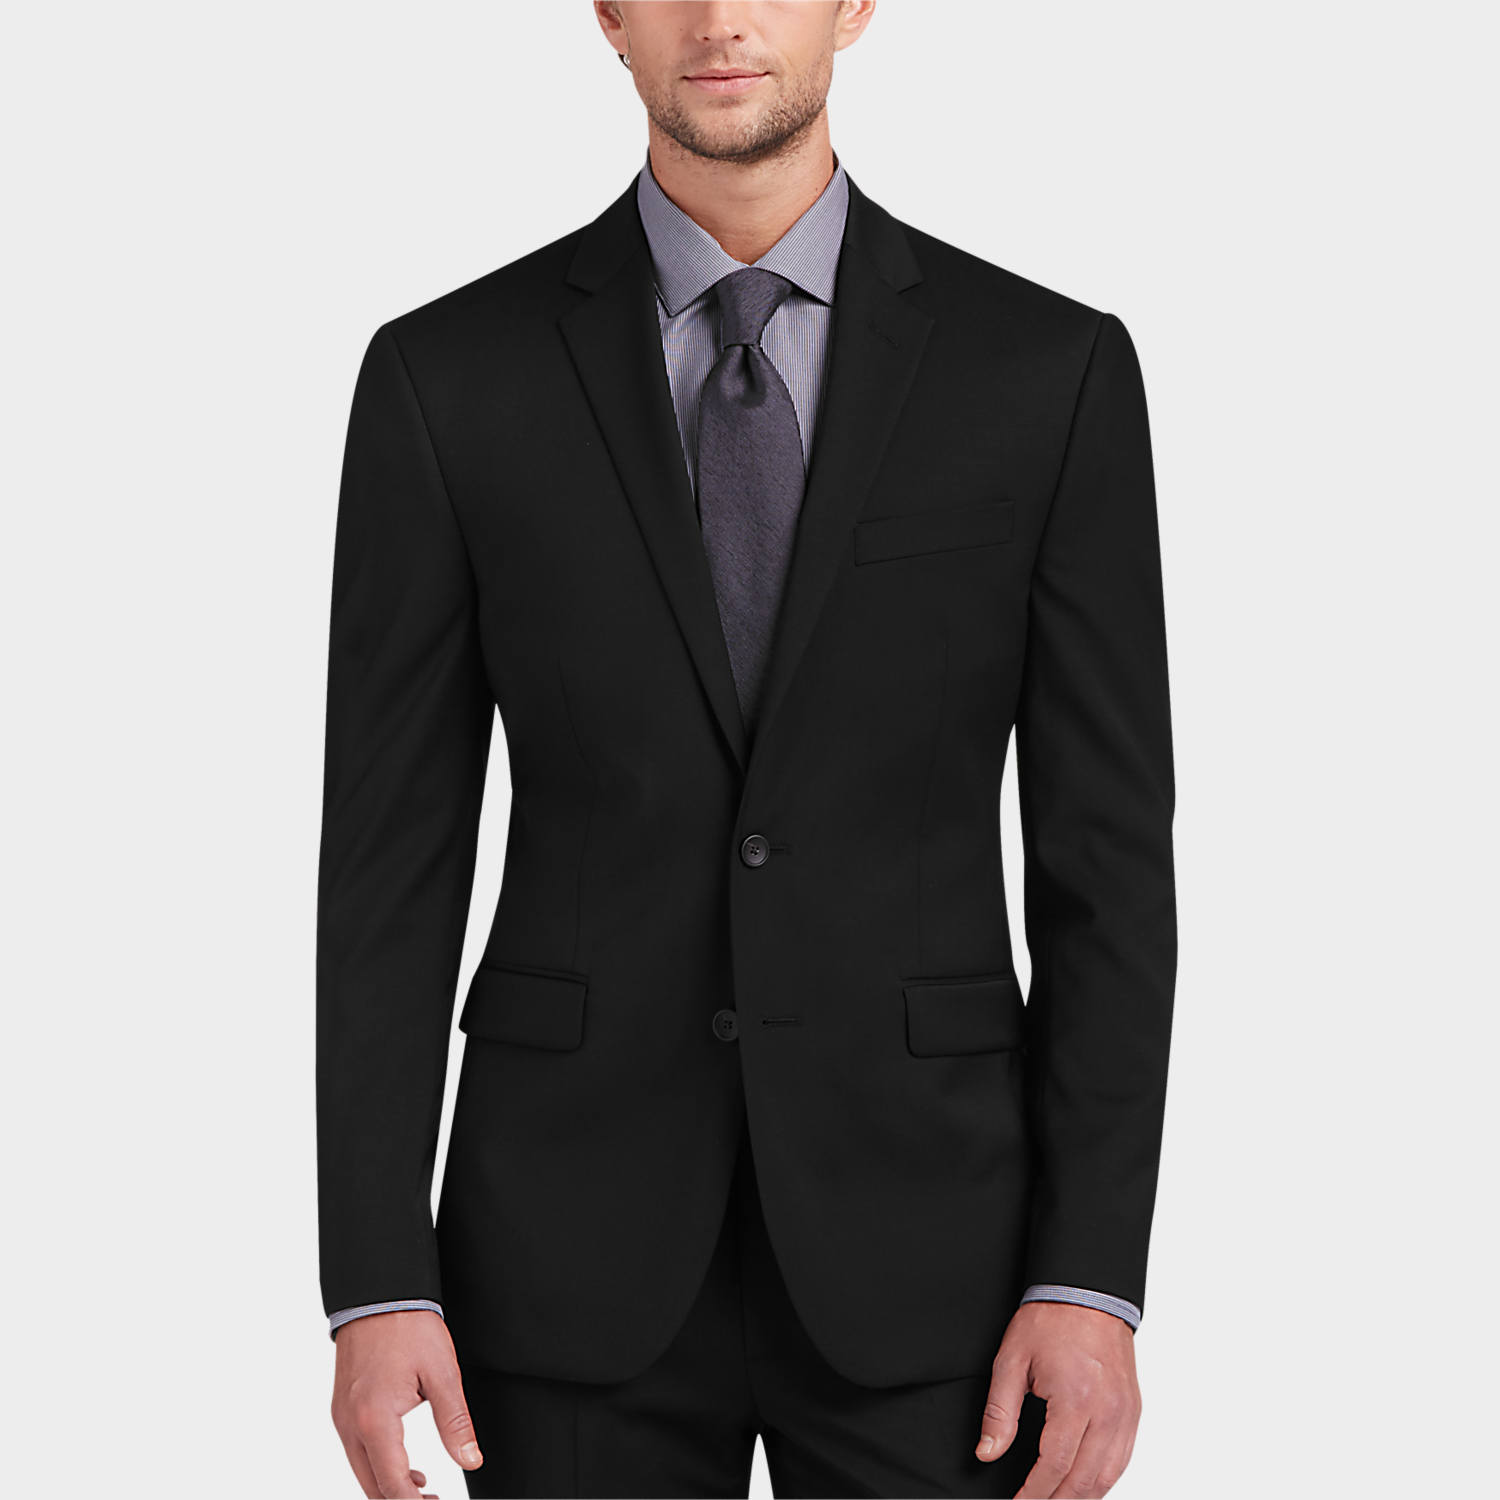 Black Suits - Shop for Men's Black Suits | Men's Wearhouse